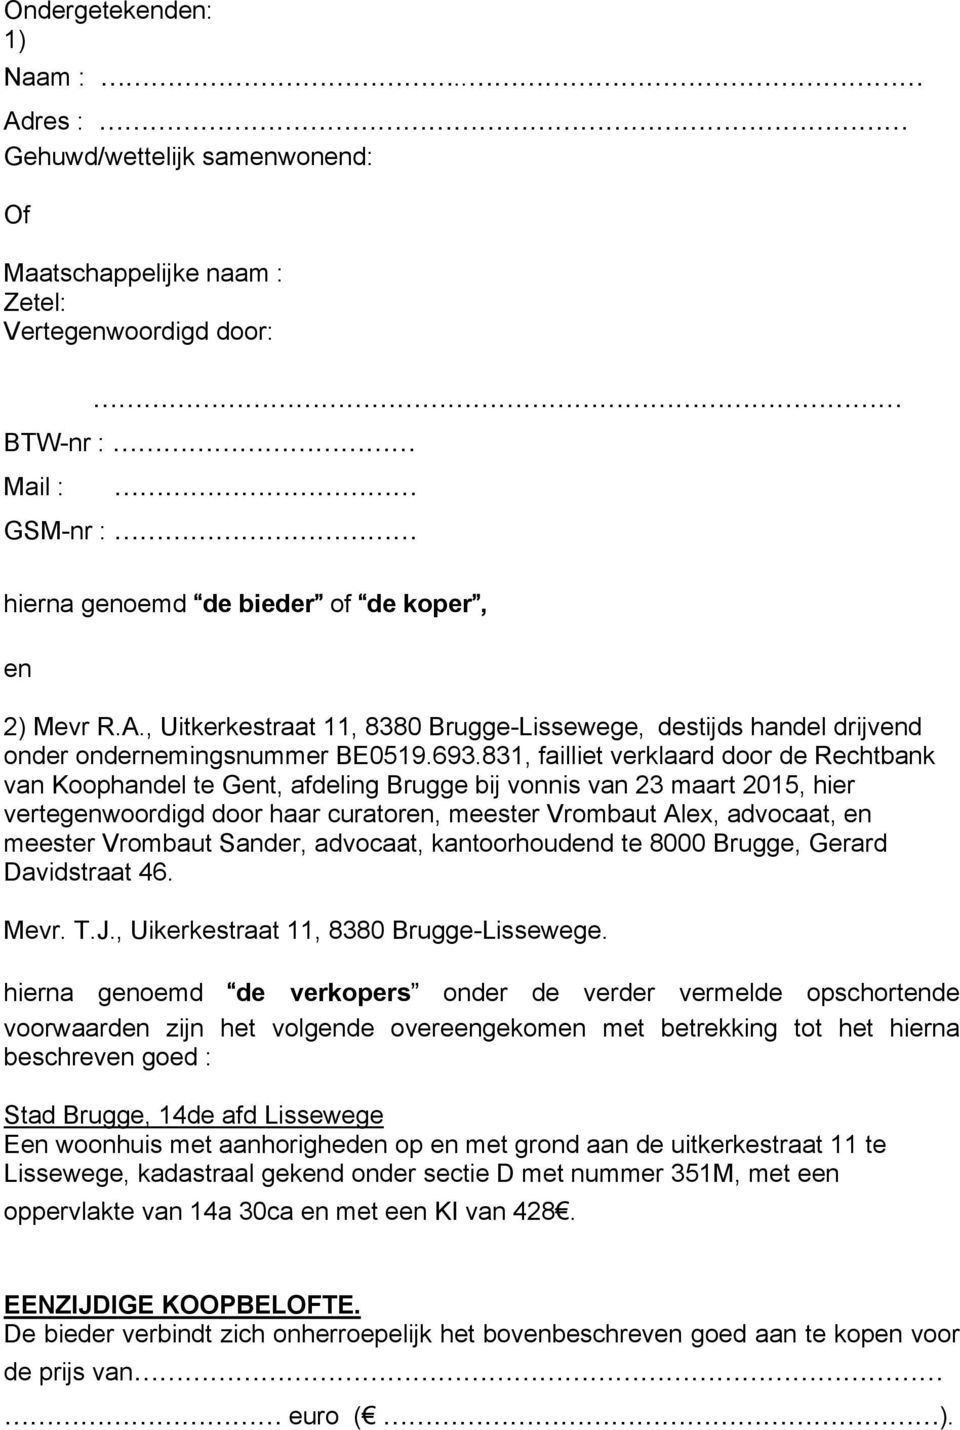 831, failliet verklaard door de Rechtbank van Koophandel te Gent, afdeling Brugge bij vonnis van 23 maart 2015, hier vertegenwoordigd door haar curatoren, meester Vrombaut Alex, advocaat, en meester